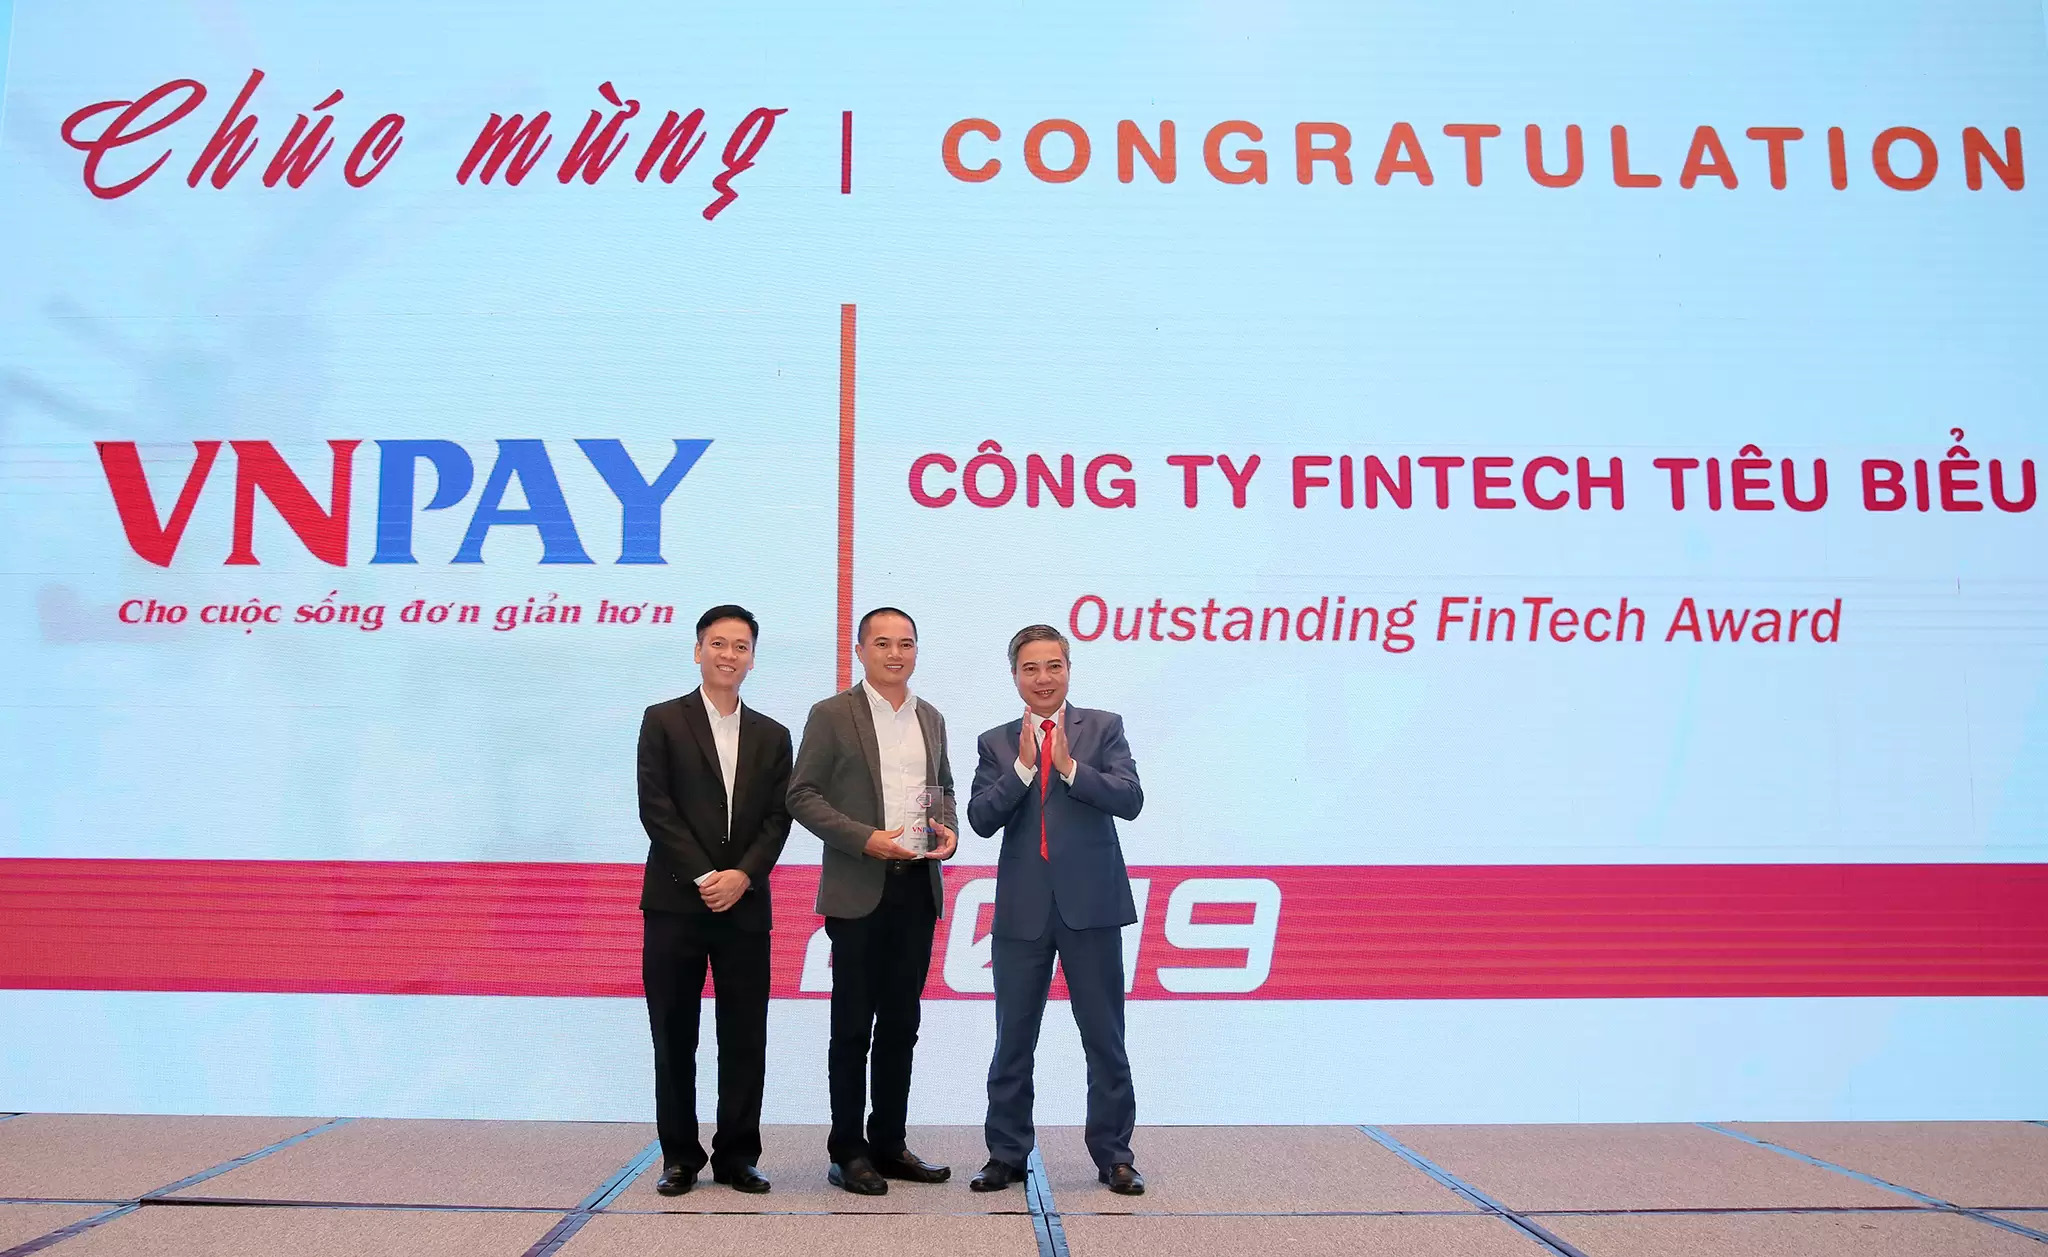 VNPAY nhận giải thưởng công ty Fintech tiêu biểu năm 2019